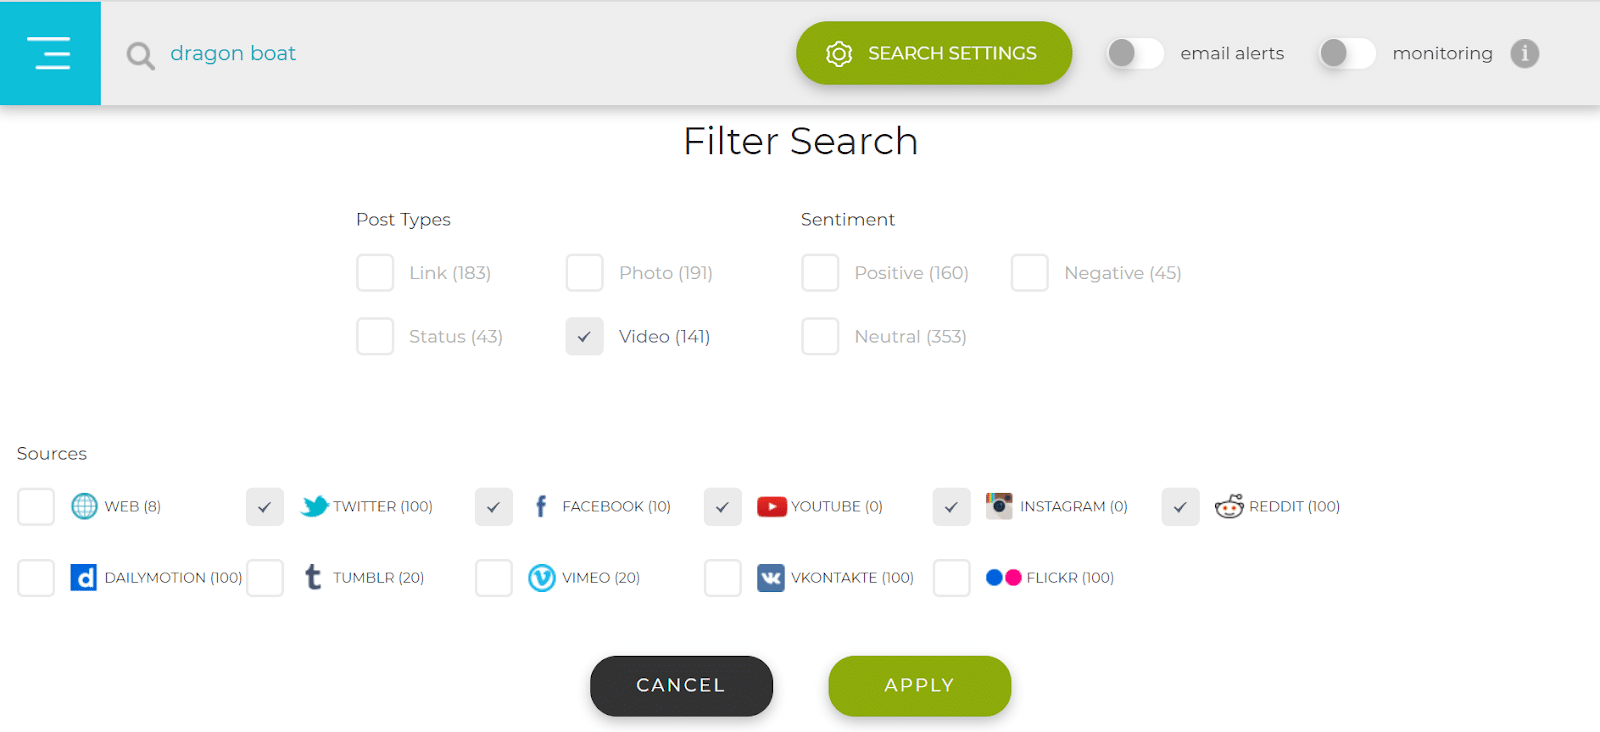 A página inicial do mecanismo de pesquisa Social searcher